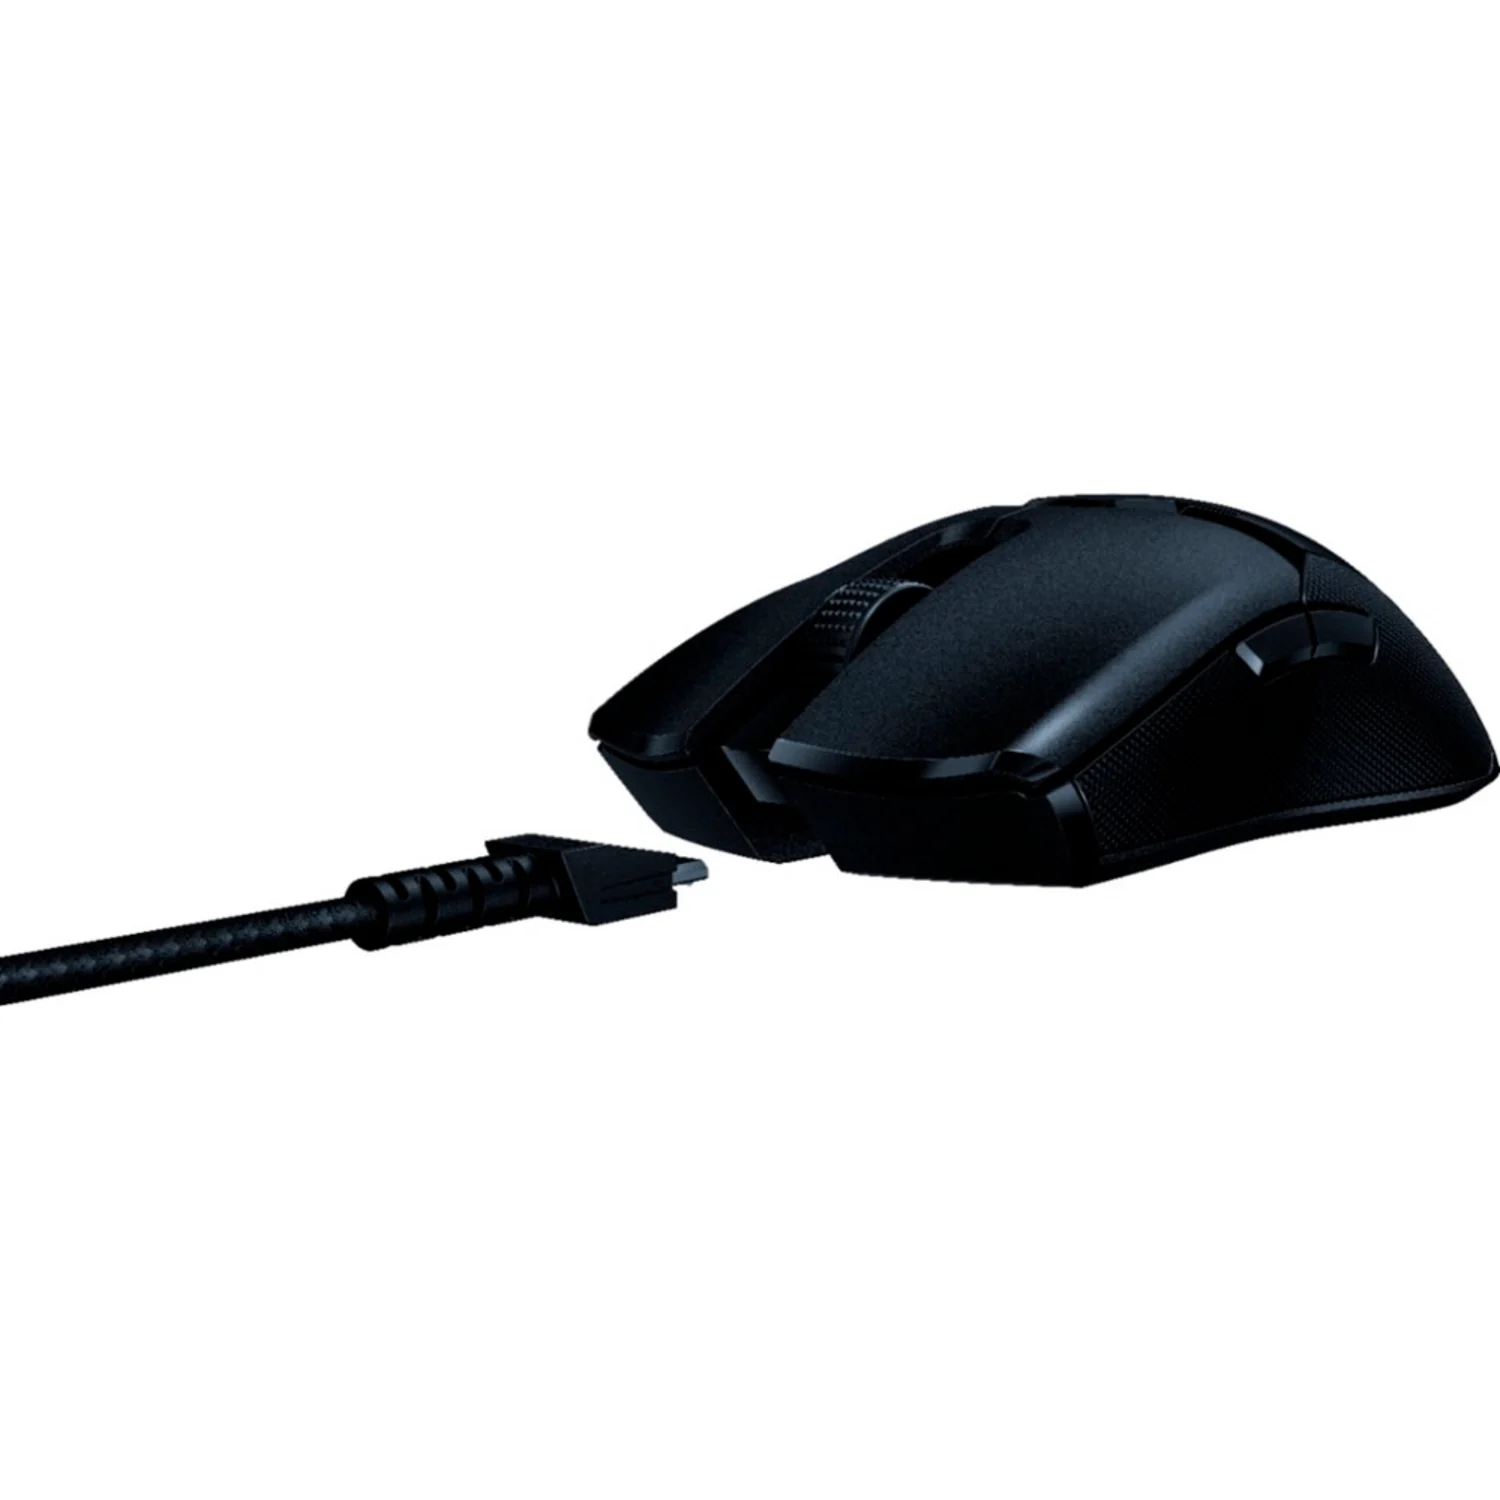 Mouse Razer Viper Ultimate - Preto (RZ01-03050200-R3U1)